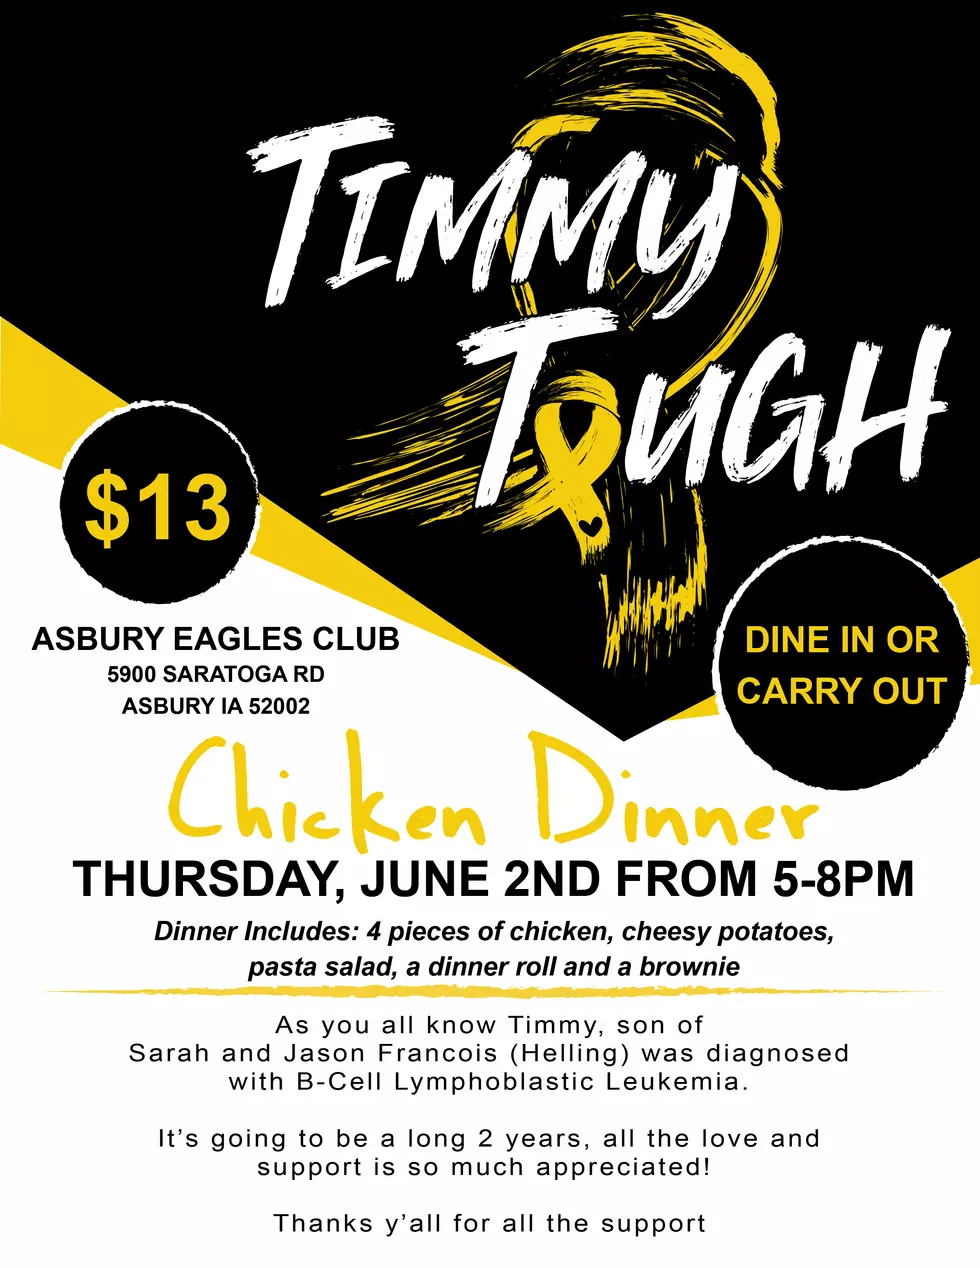 Asbury Eagles Club Hosting &#8220;Timmy Tough&#8221; Fundraiser